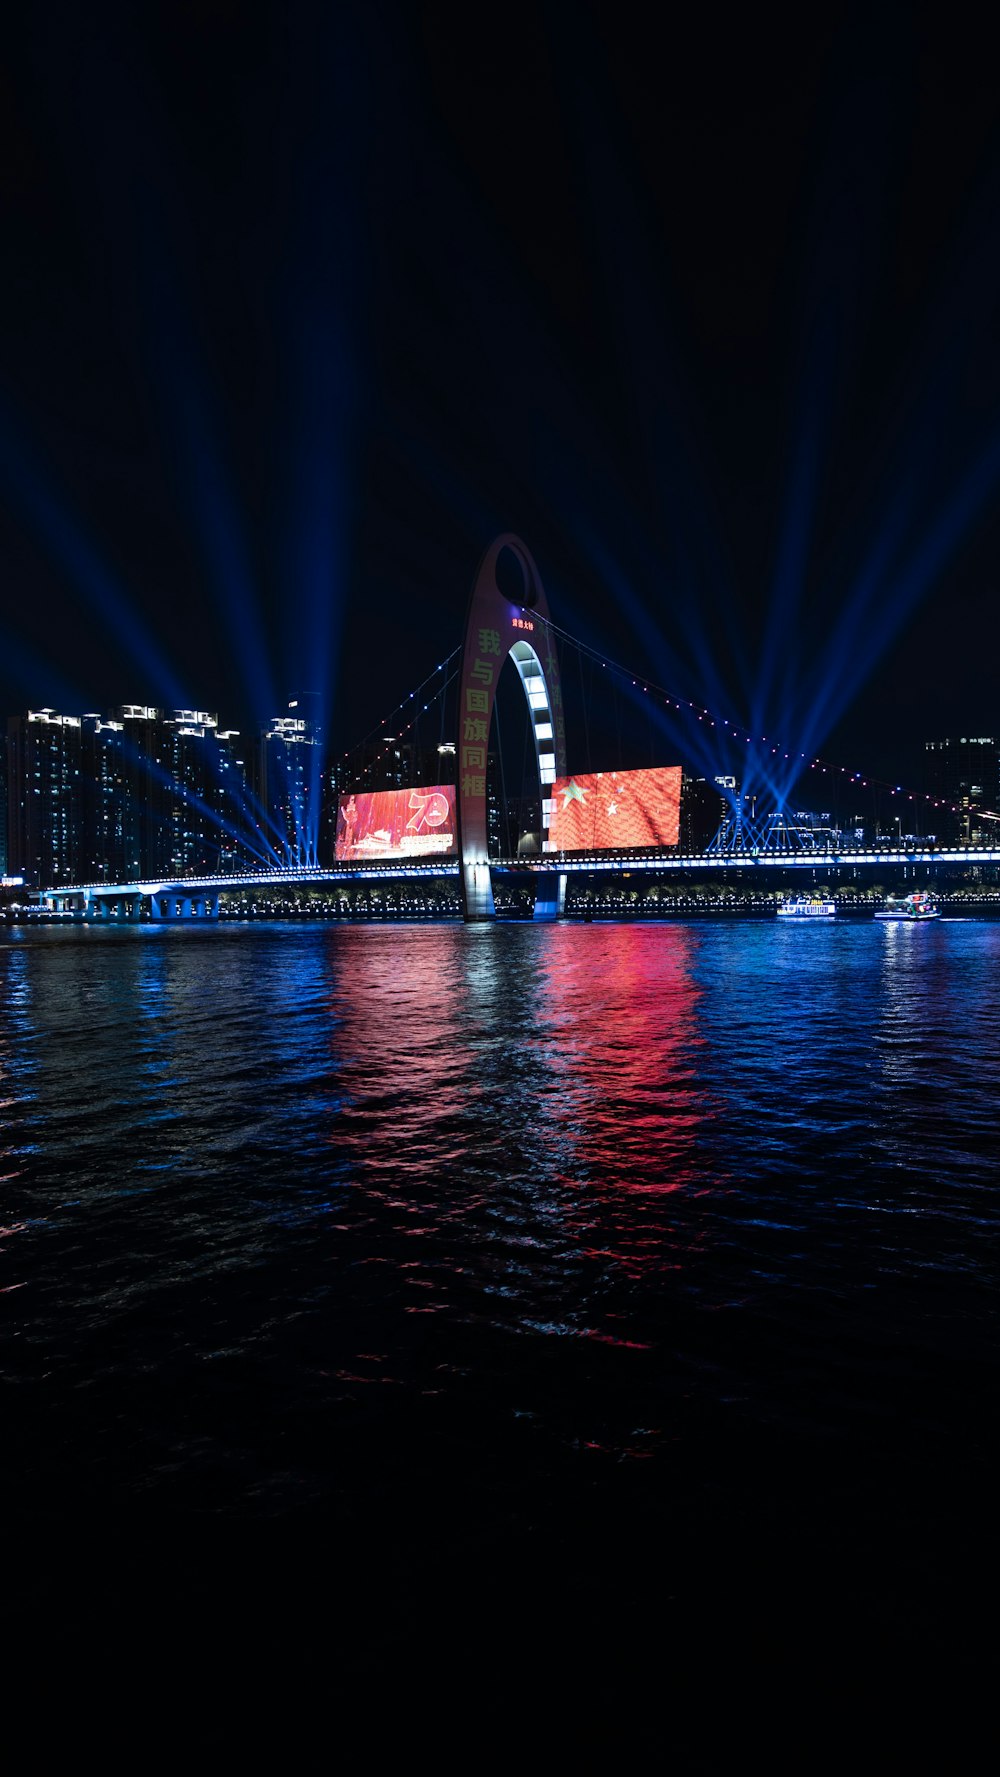 reflexão das luzes do palco no corpo de água à noite